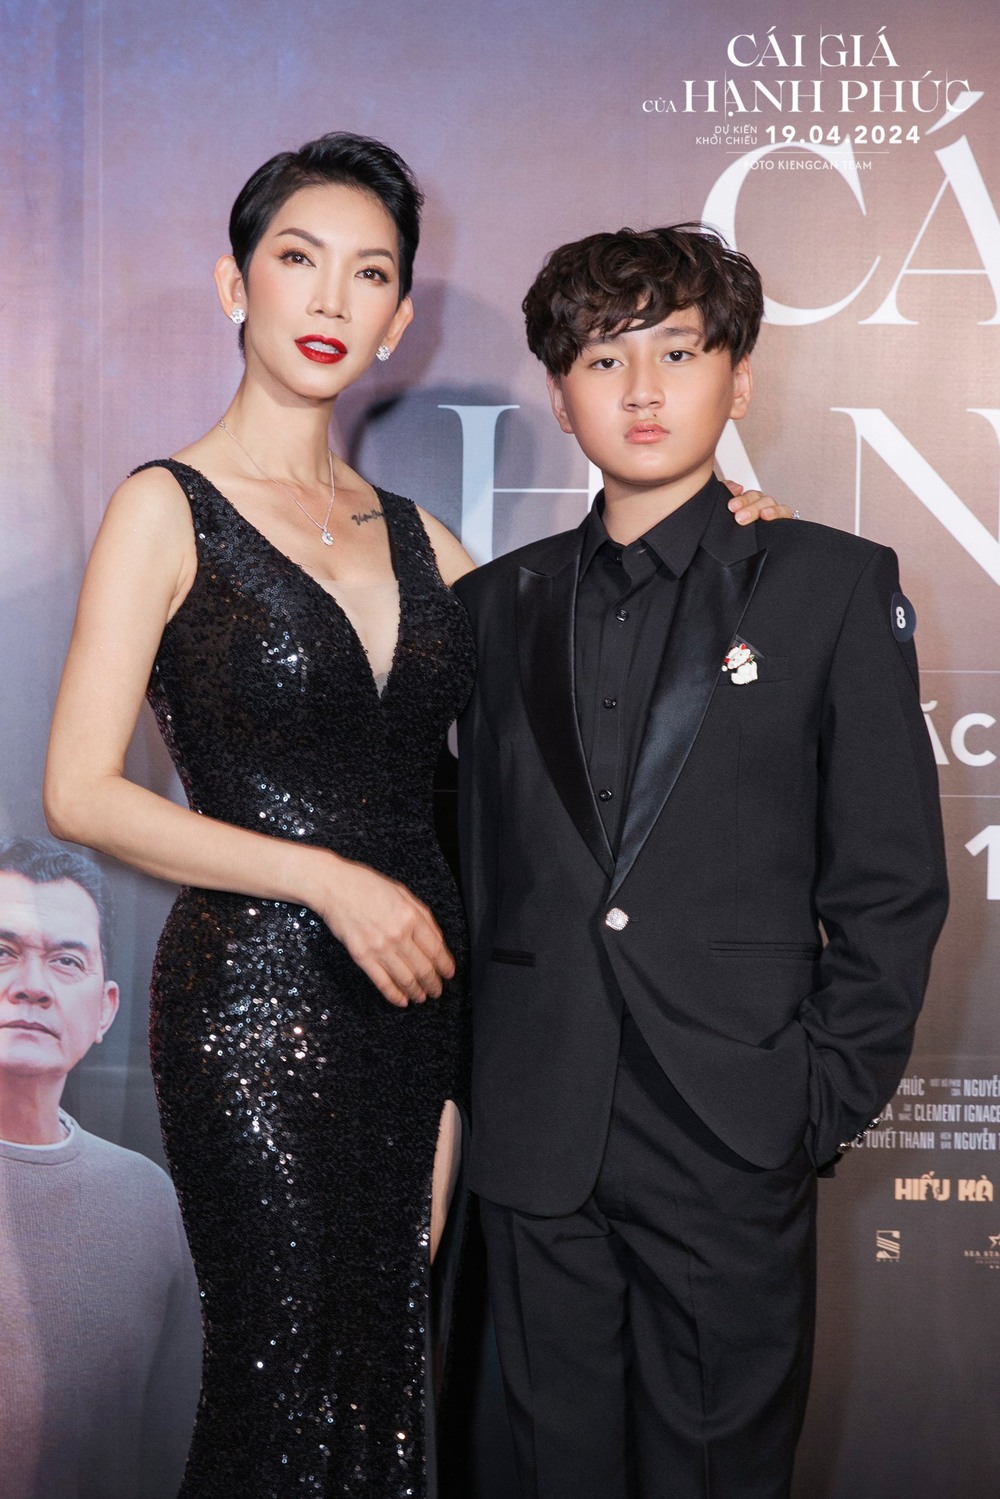 Trọng Phương từ người mẫu teen đến nhà đầu tư phim nhỏ tuổi nhất Việt Nam - Ảnh 2.